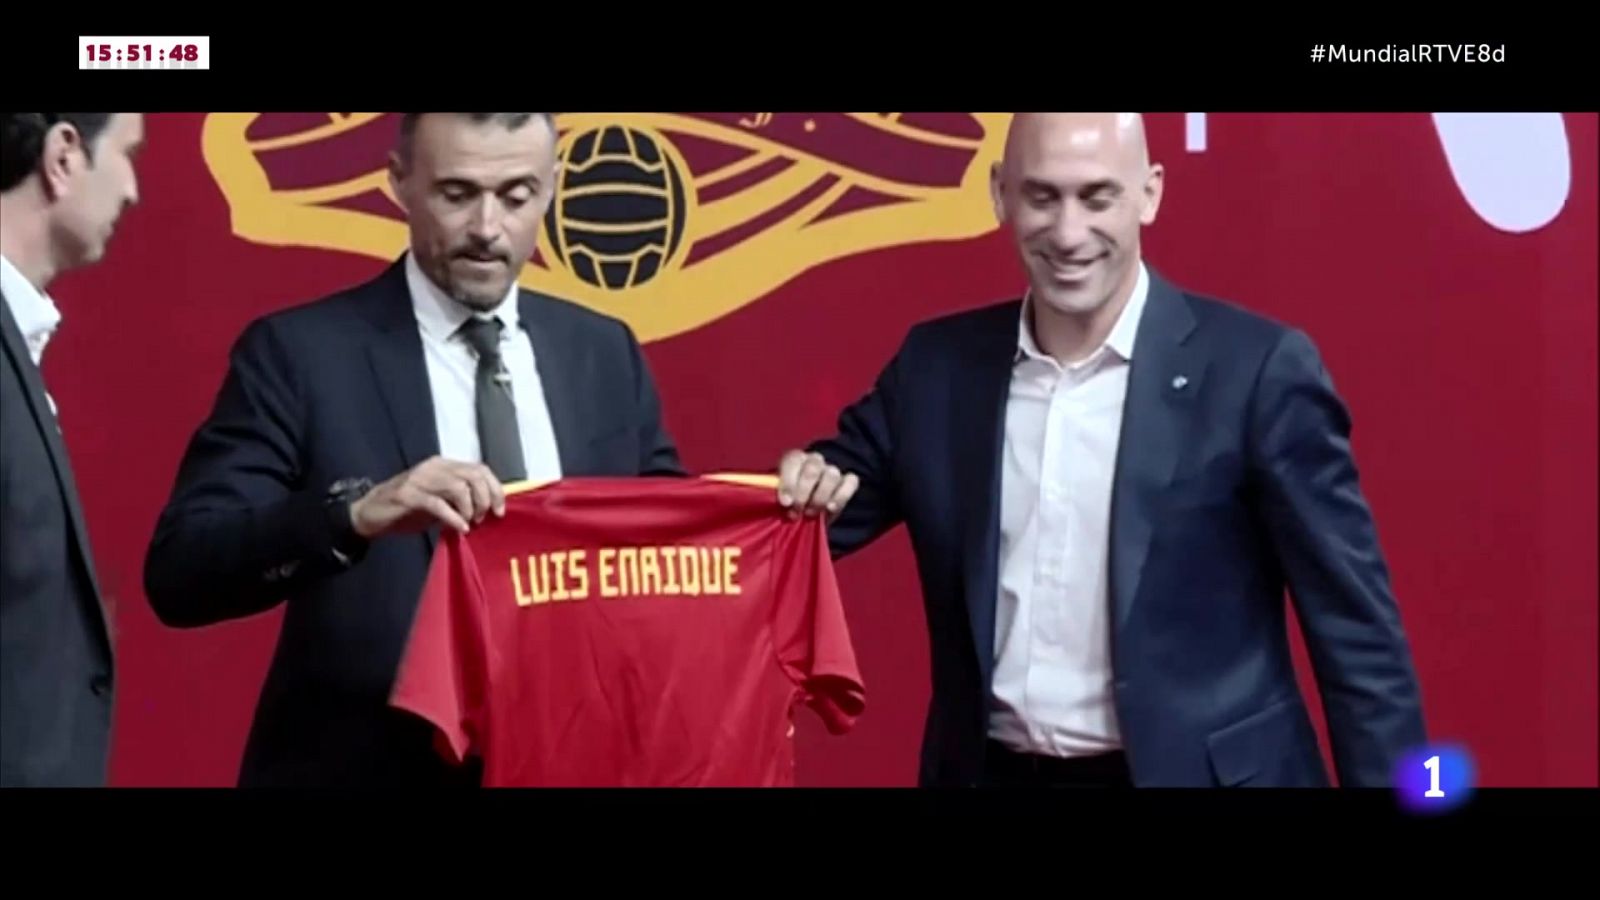 La historia de Luis Enrique al frente de la selección española     